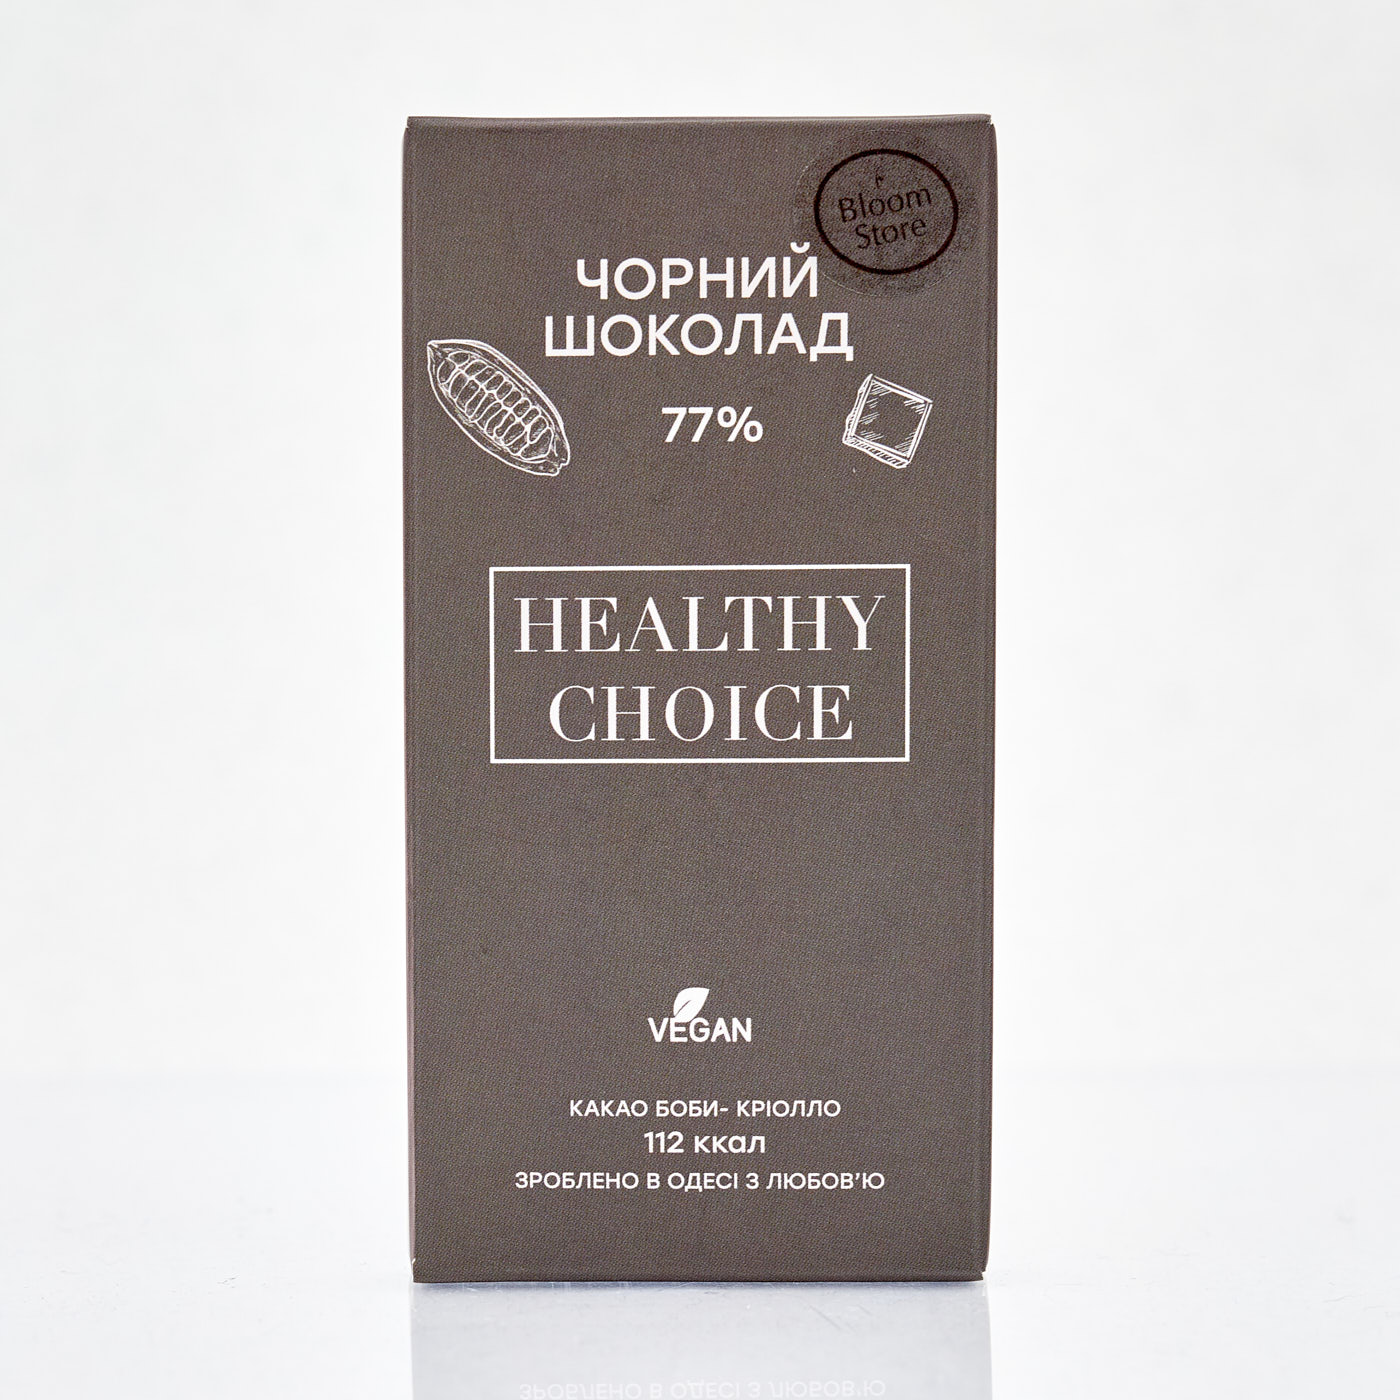 Черный шоколад 77% - 1